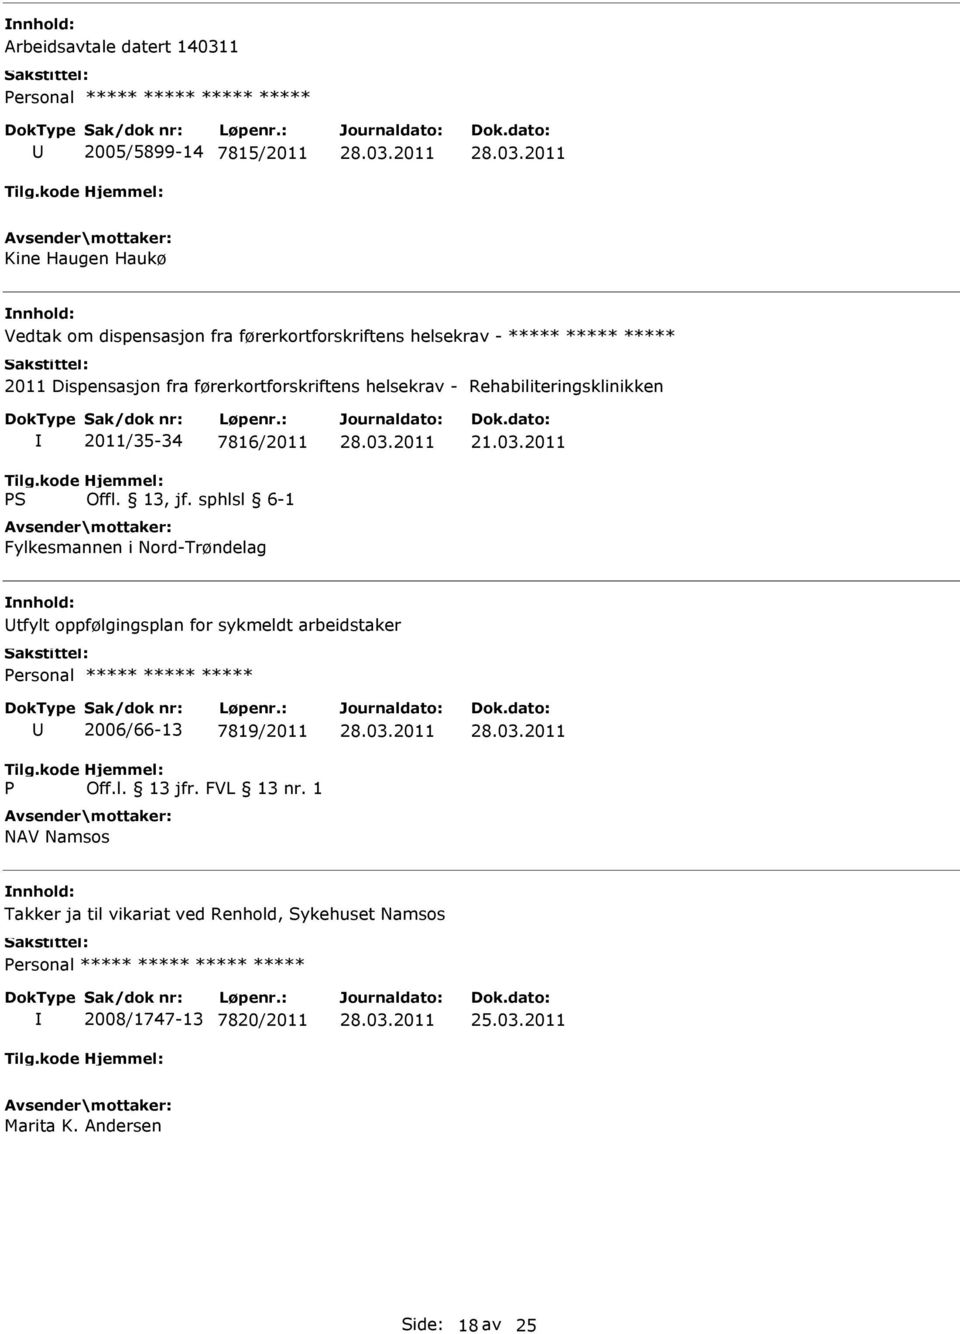 7816/2011 Fylkesmannen i Nord-Trøndelag tfylt oppfølgingsplan for sykmeldt arbeidstaker ersonal ***** ***** ***** 2006/66-13